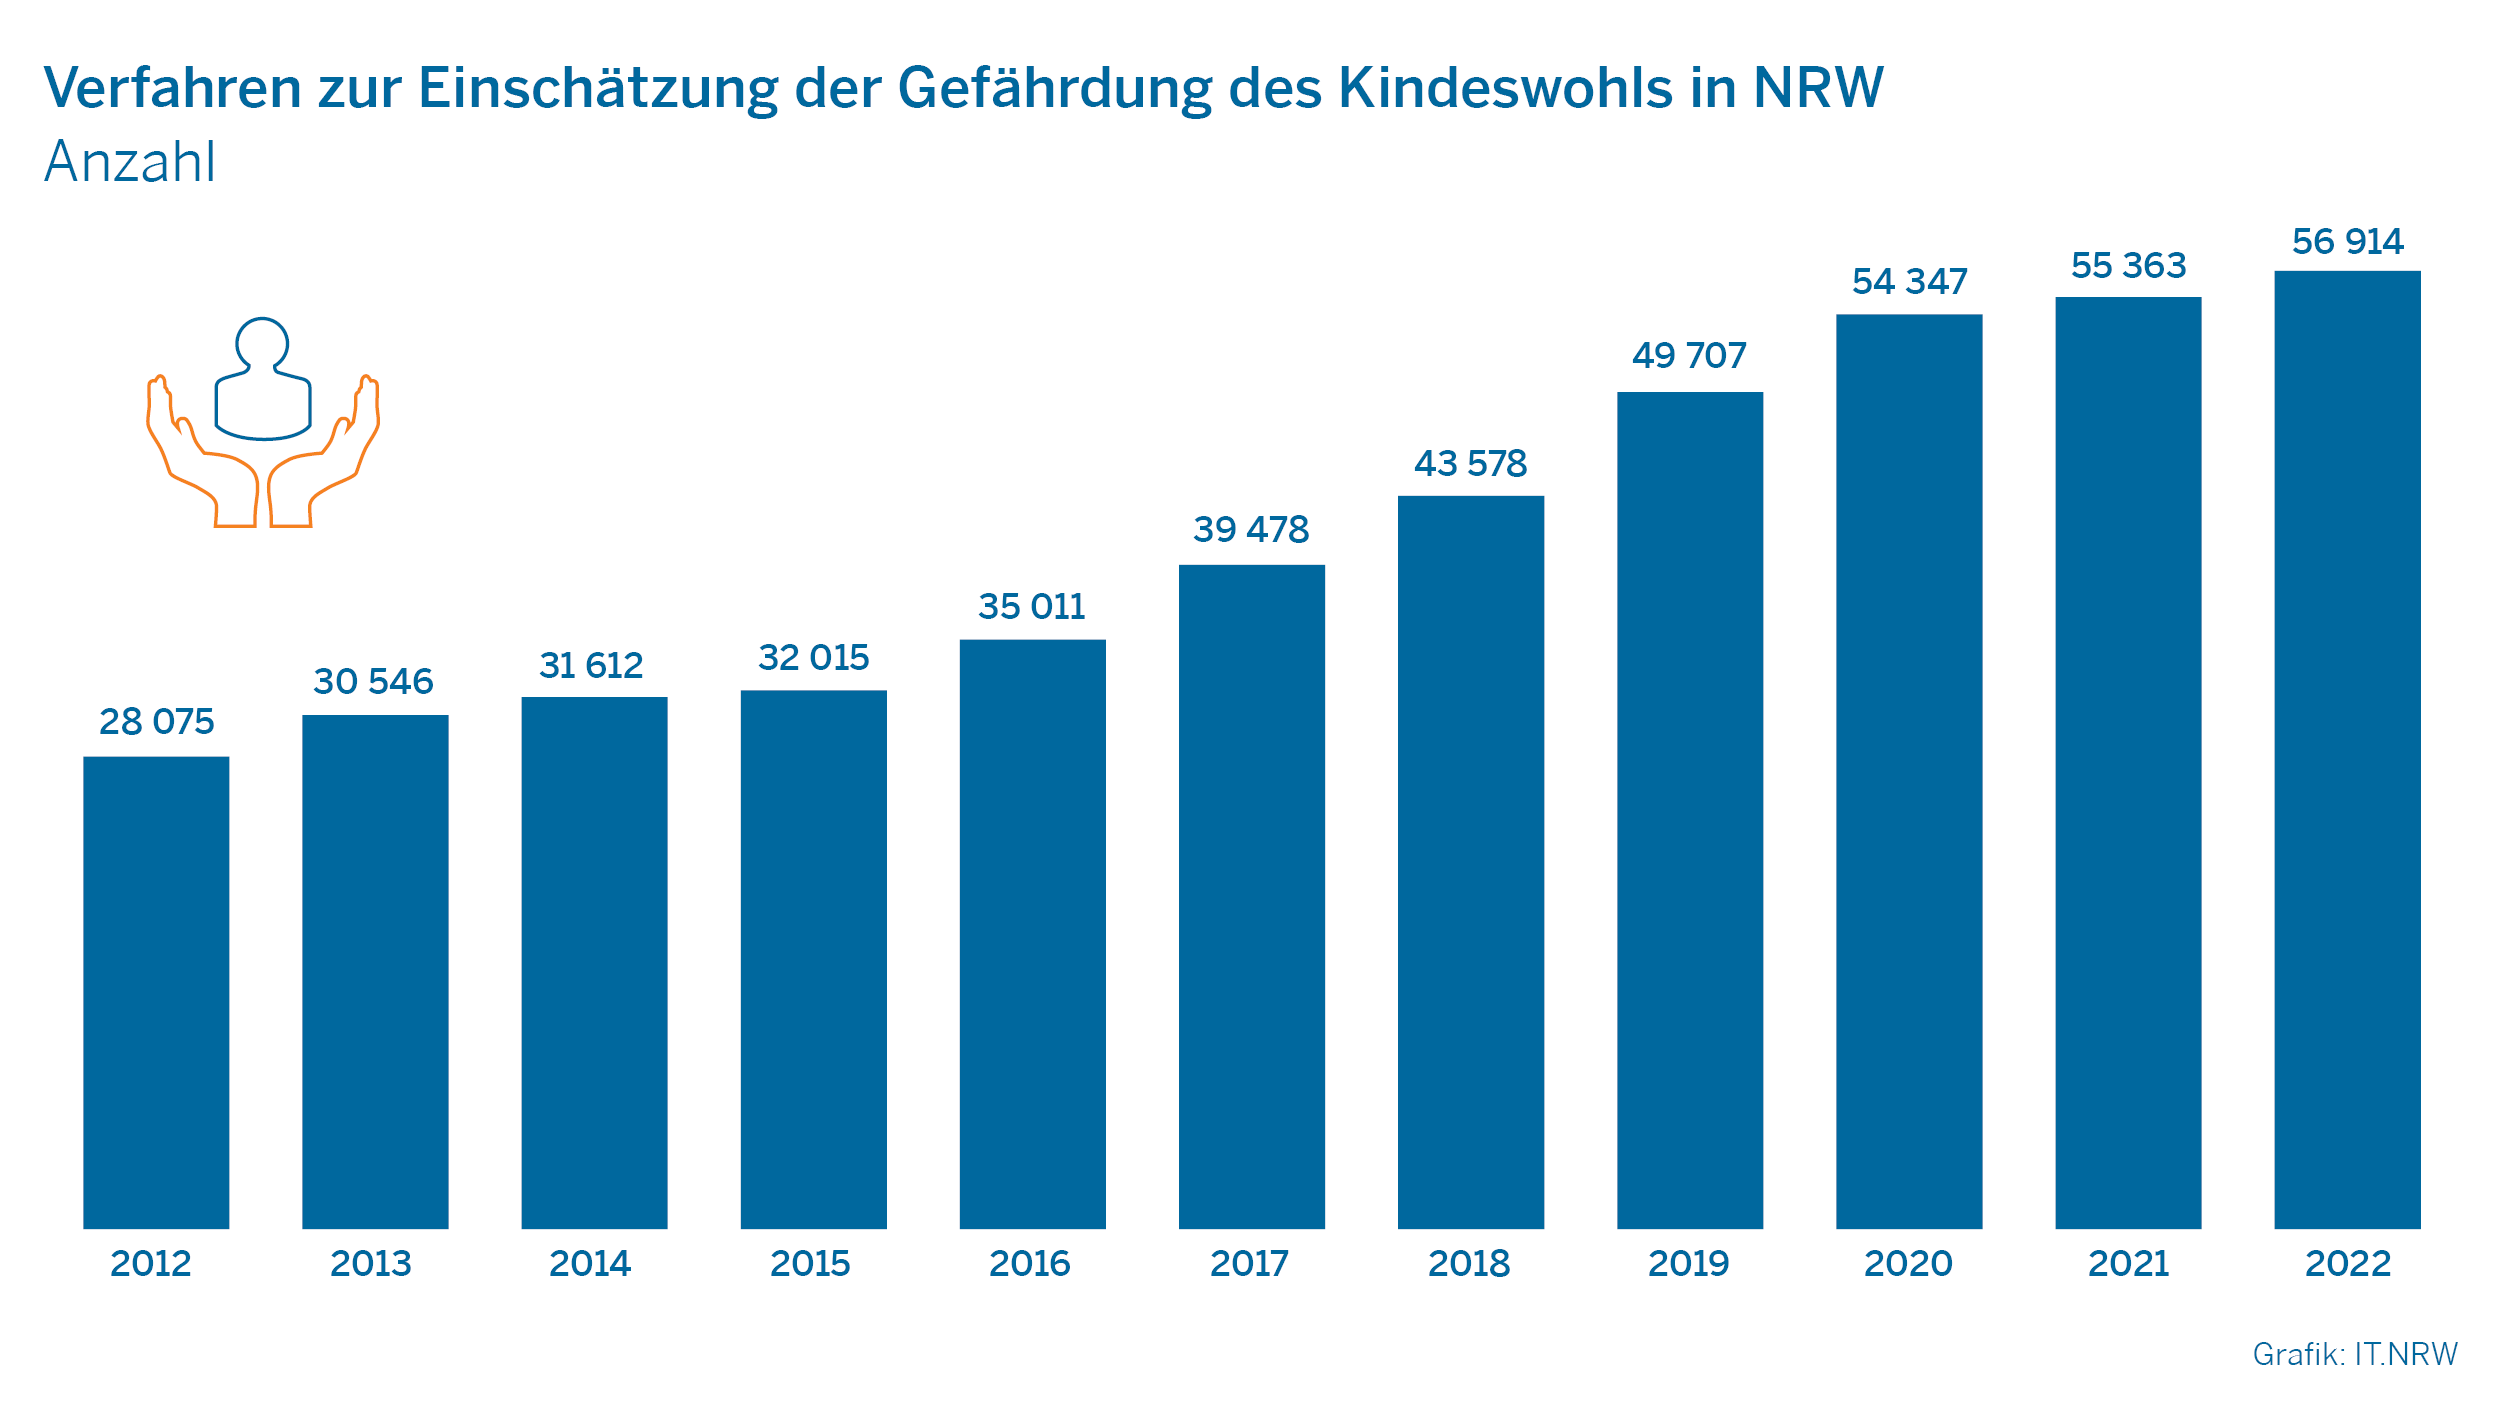 Verfahren zur Einschätzung der Gefährdung des Kindeswohls in NRW